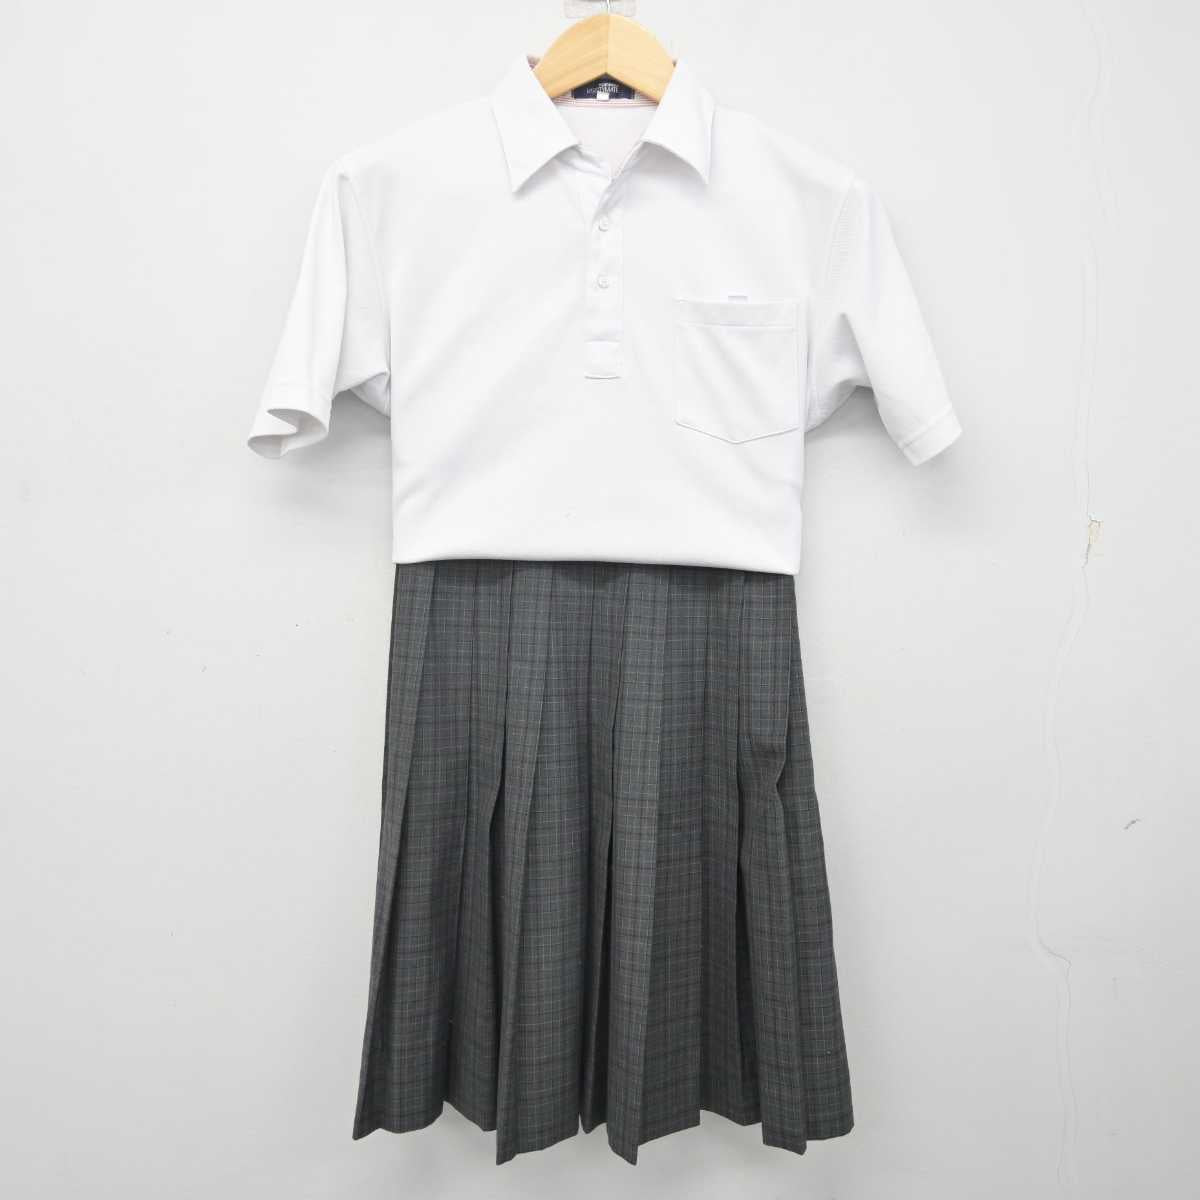 【中古】愛知県 大江中学校 女子制服 2点 (シャツ・スカート) sf071338